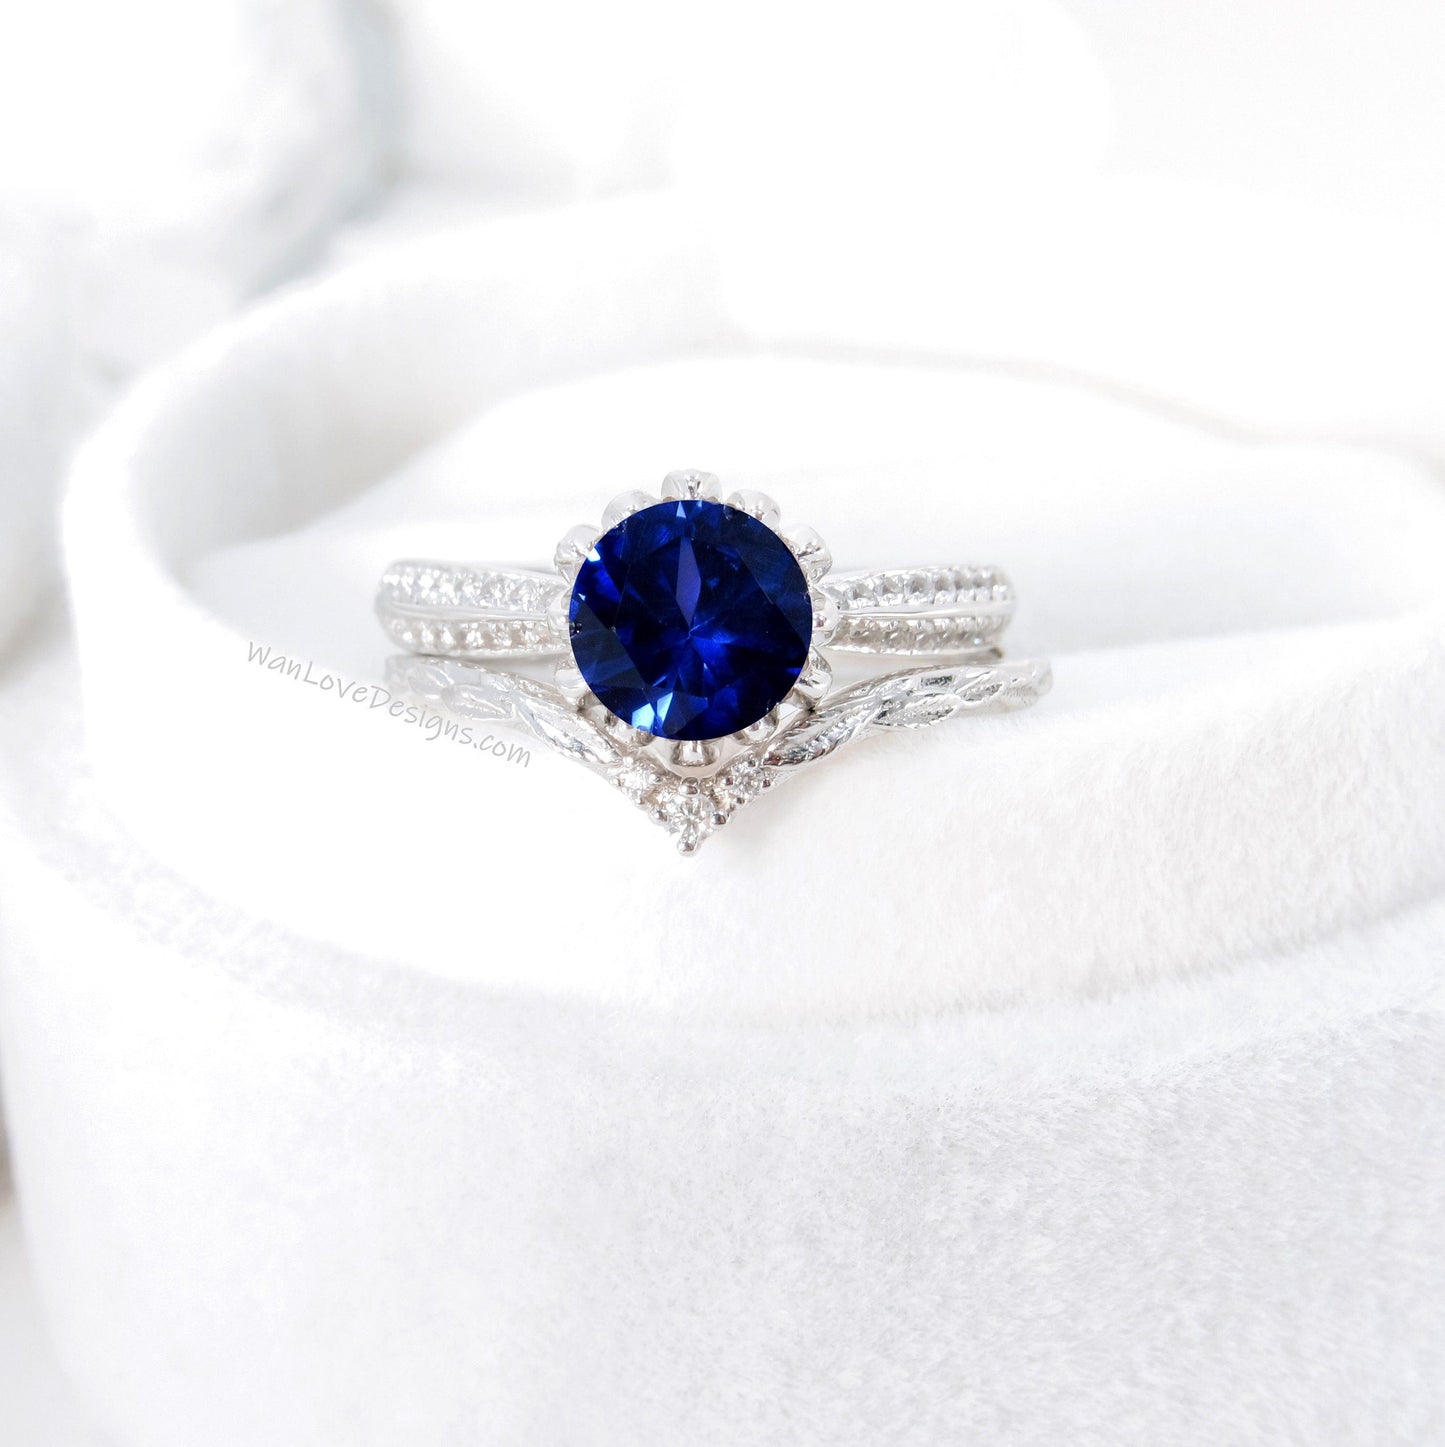 Lotus | 14K Gold Diamond Lotus Ring Set | Blue Sapphire Gold Flower Ring | Lotus Flower Ring Set | Curved Leaf Wedding Band | Bridal Gift Wan Love Designs